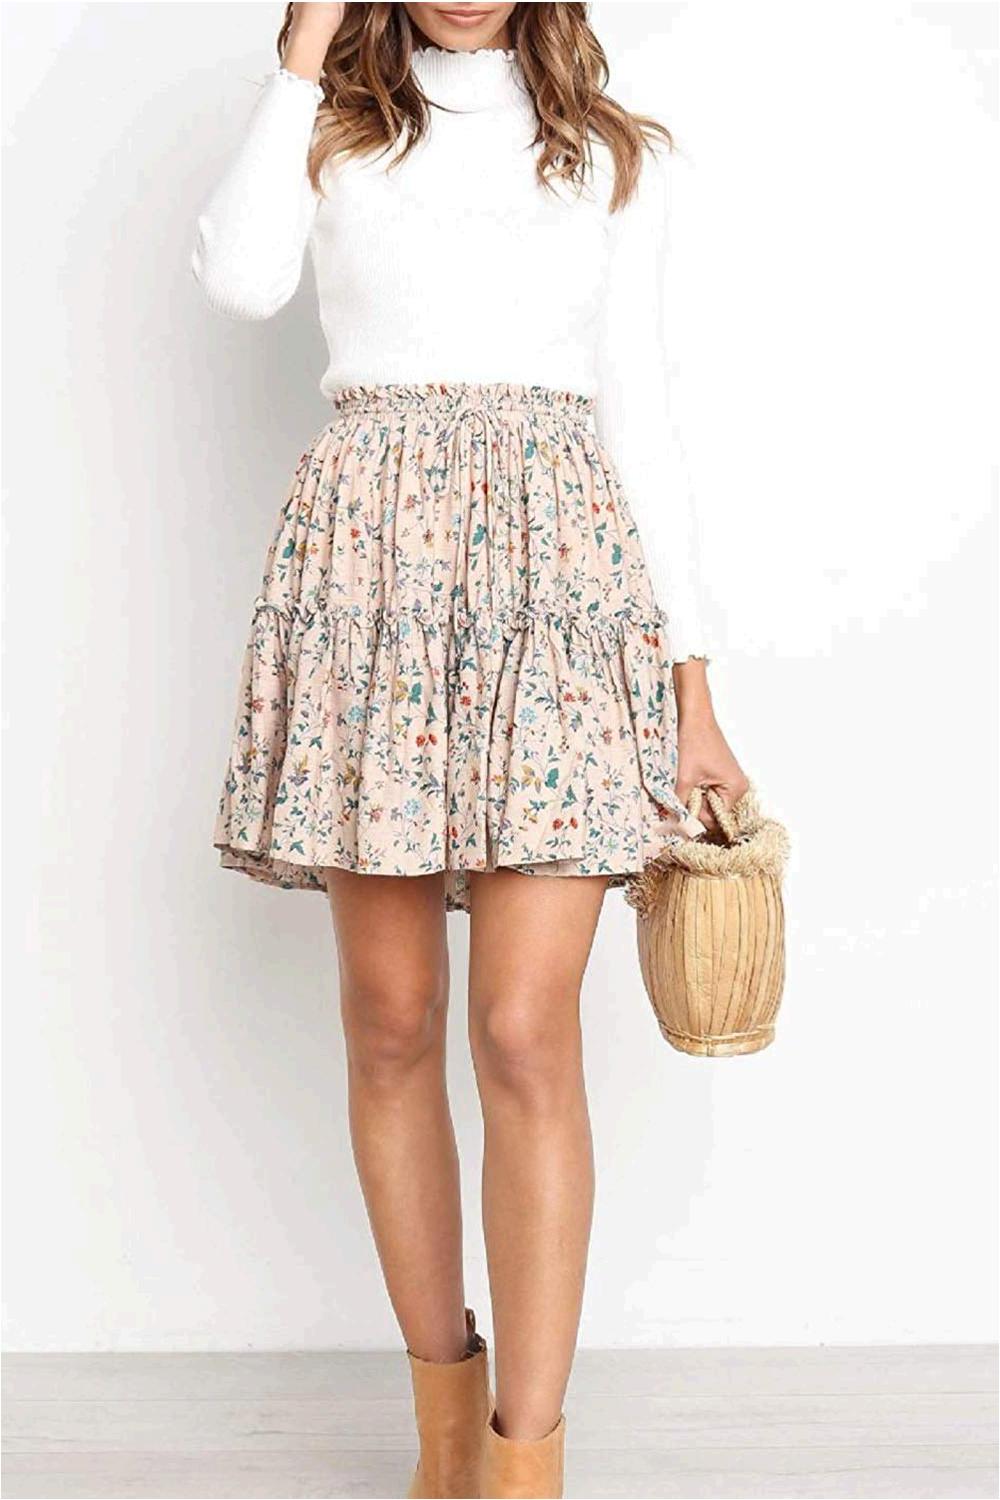 Alelly Women's Summer Cute High Waist Ruffle Skirt Floral, Beige, Size ...